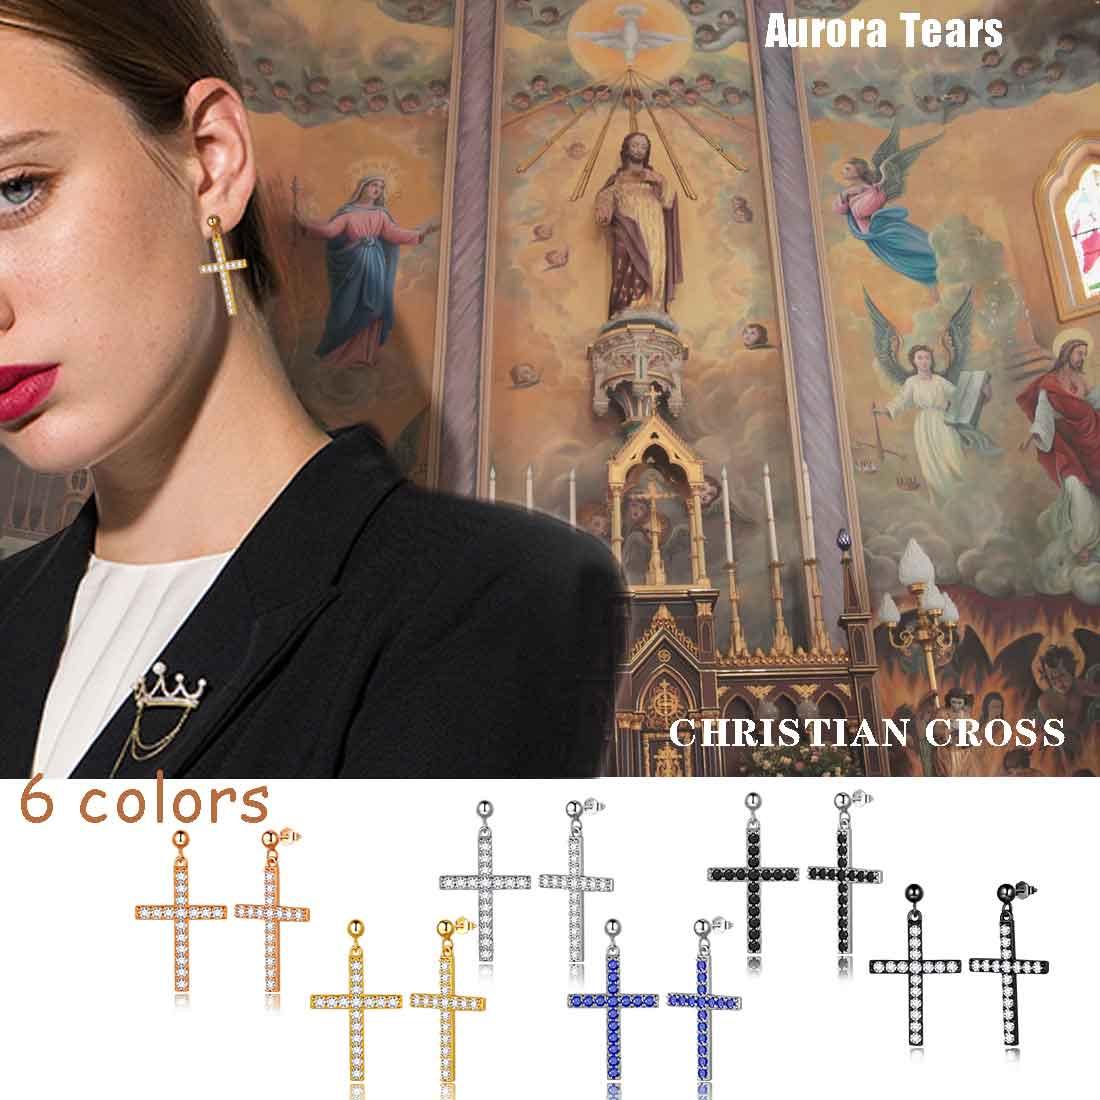 Classic Cross Drop Earrings Sterling Silver-Aurora Tears Jewelry